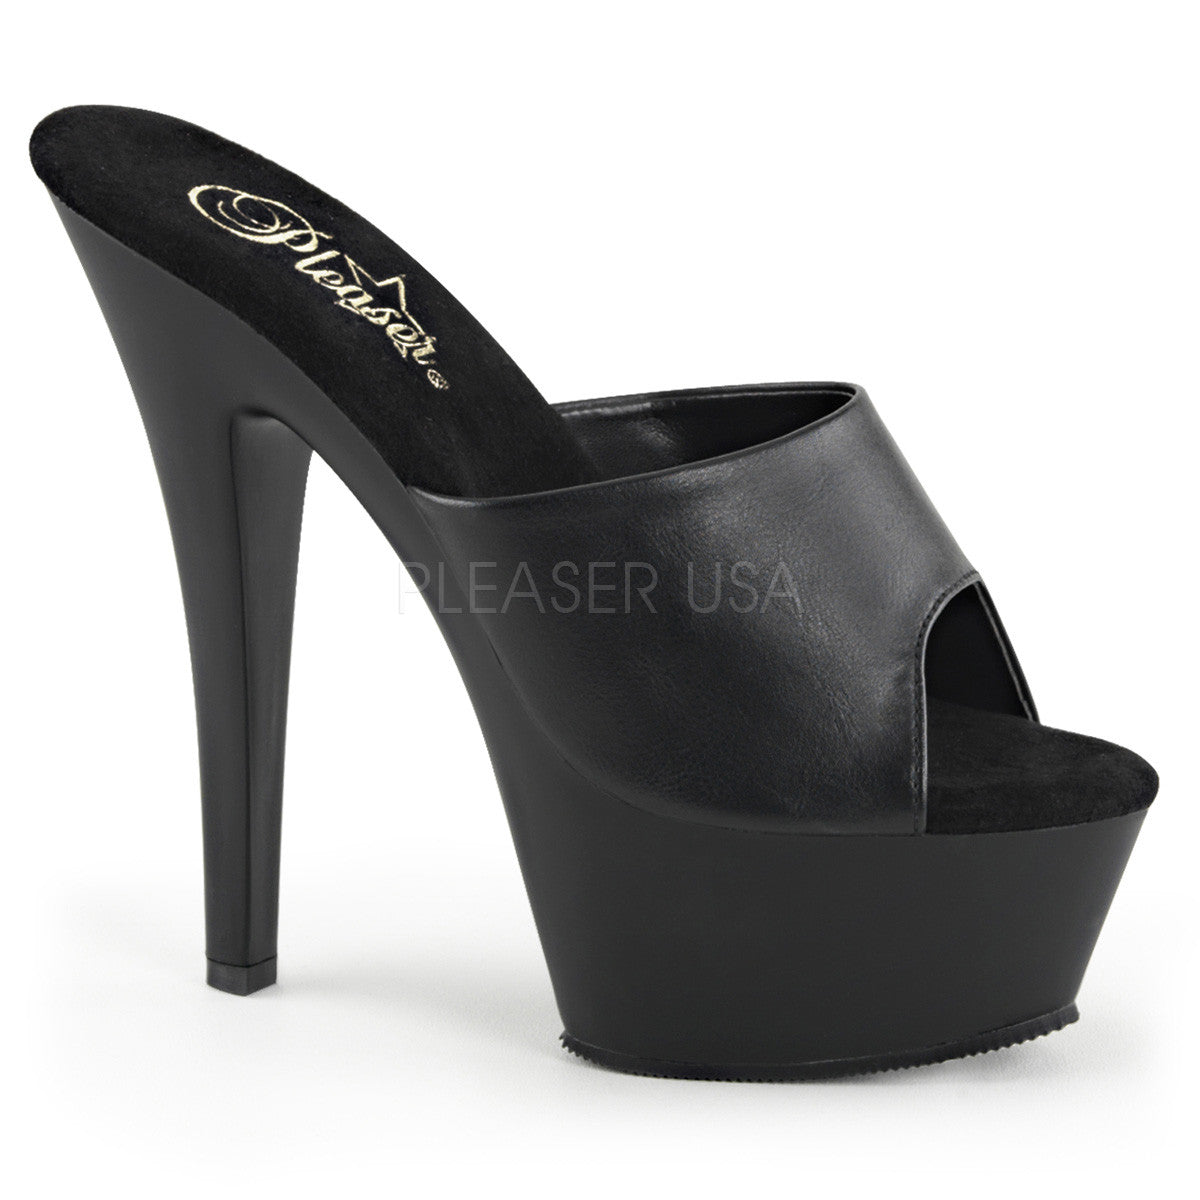 Pleaser KISS-201 Black Faux Leather Sandals With Black Matte Platform - Shoecup.com